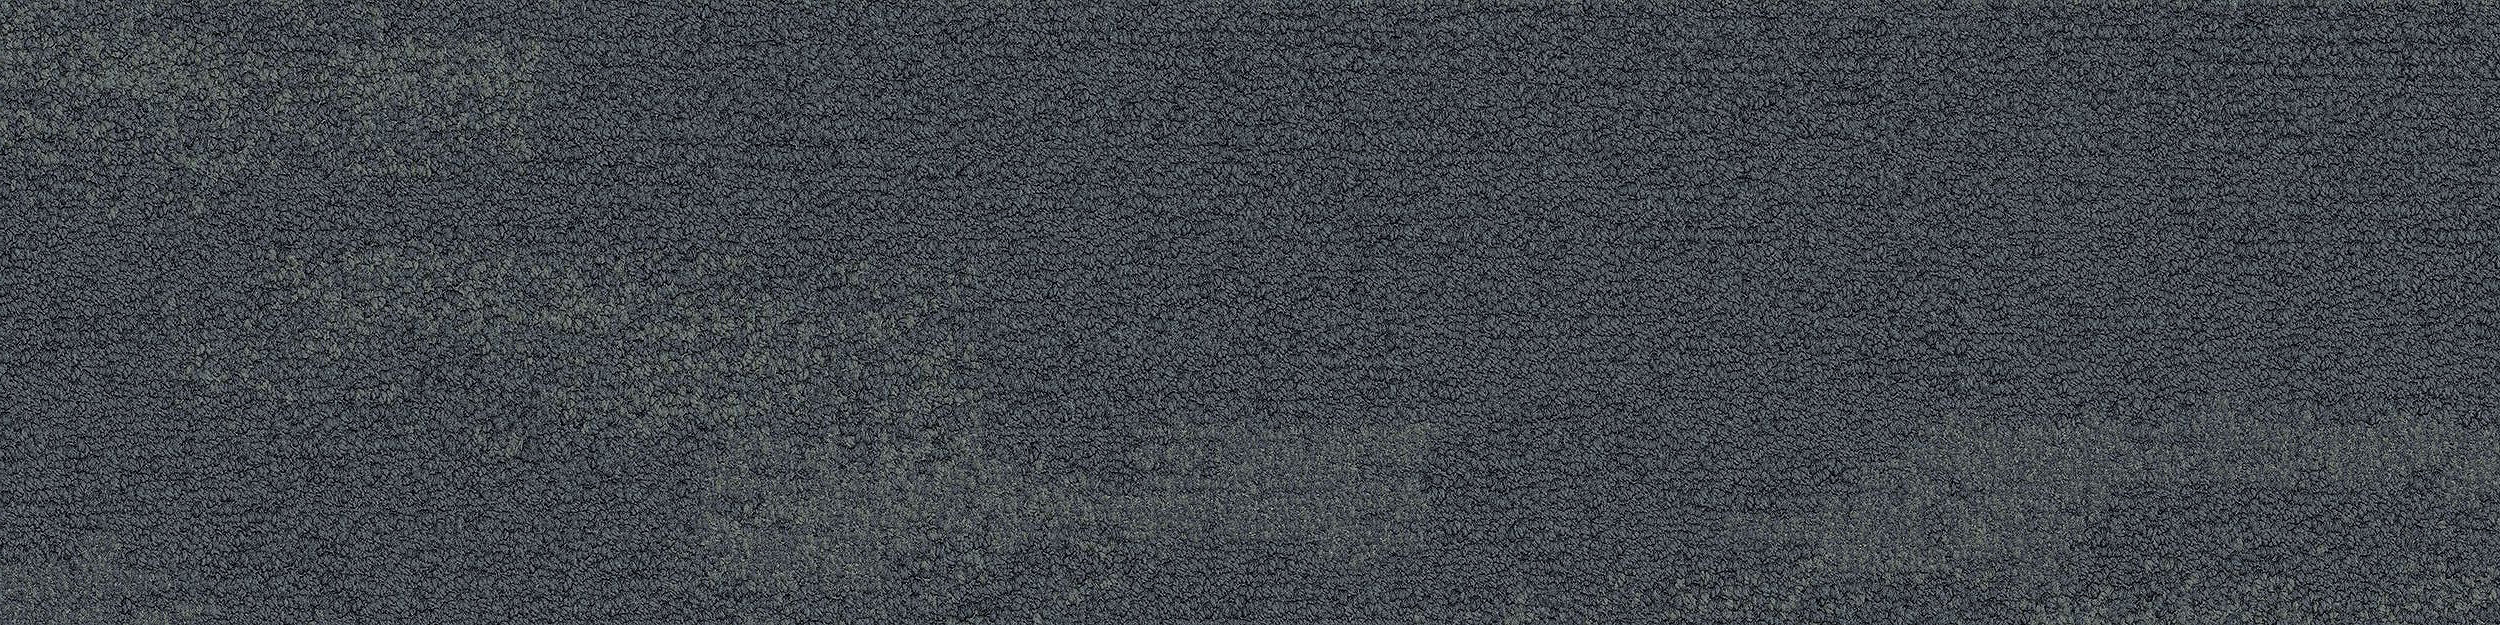 NF401 Carpet Tile In Shale image number 10